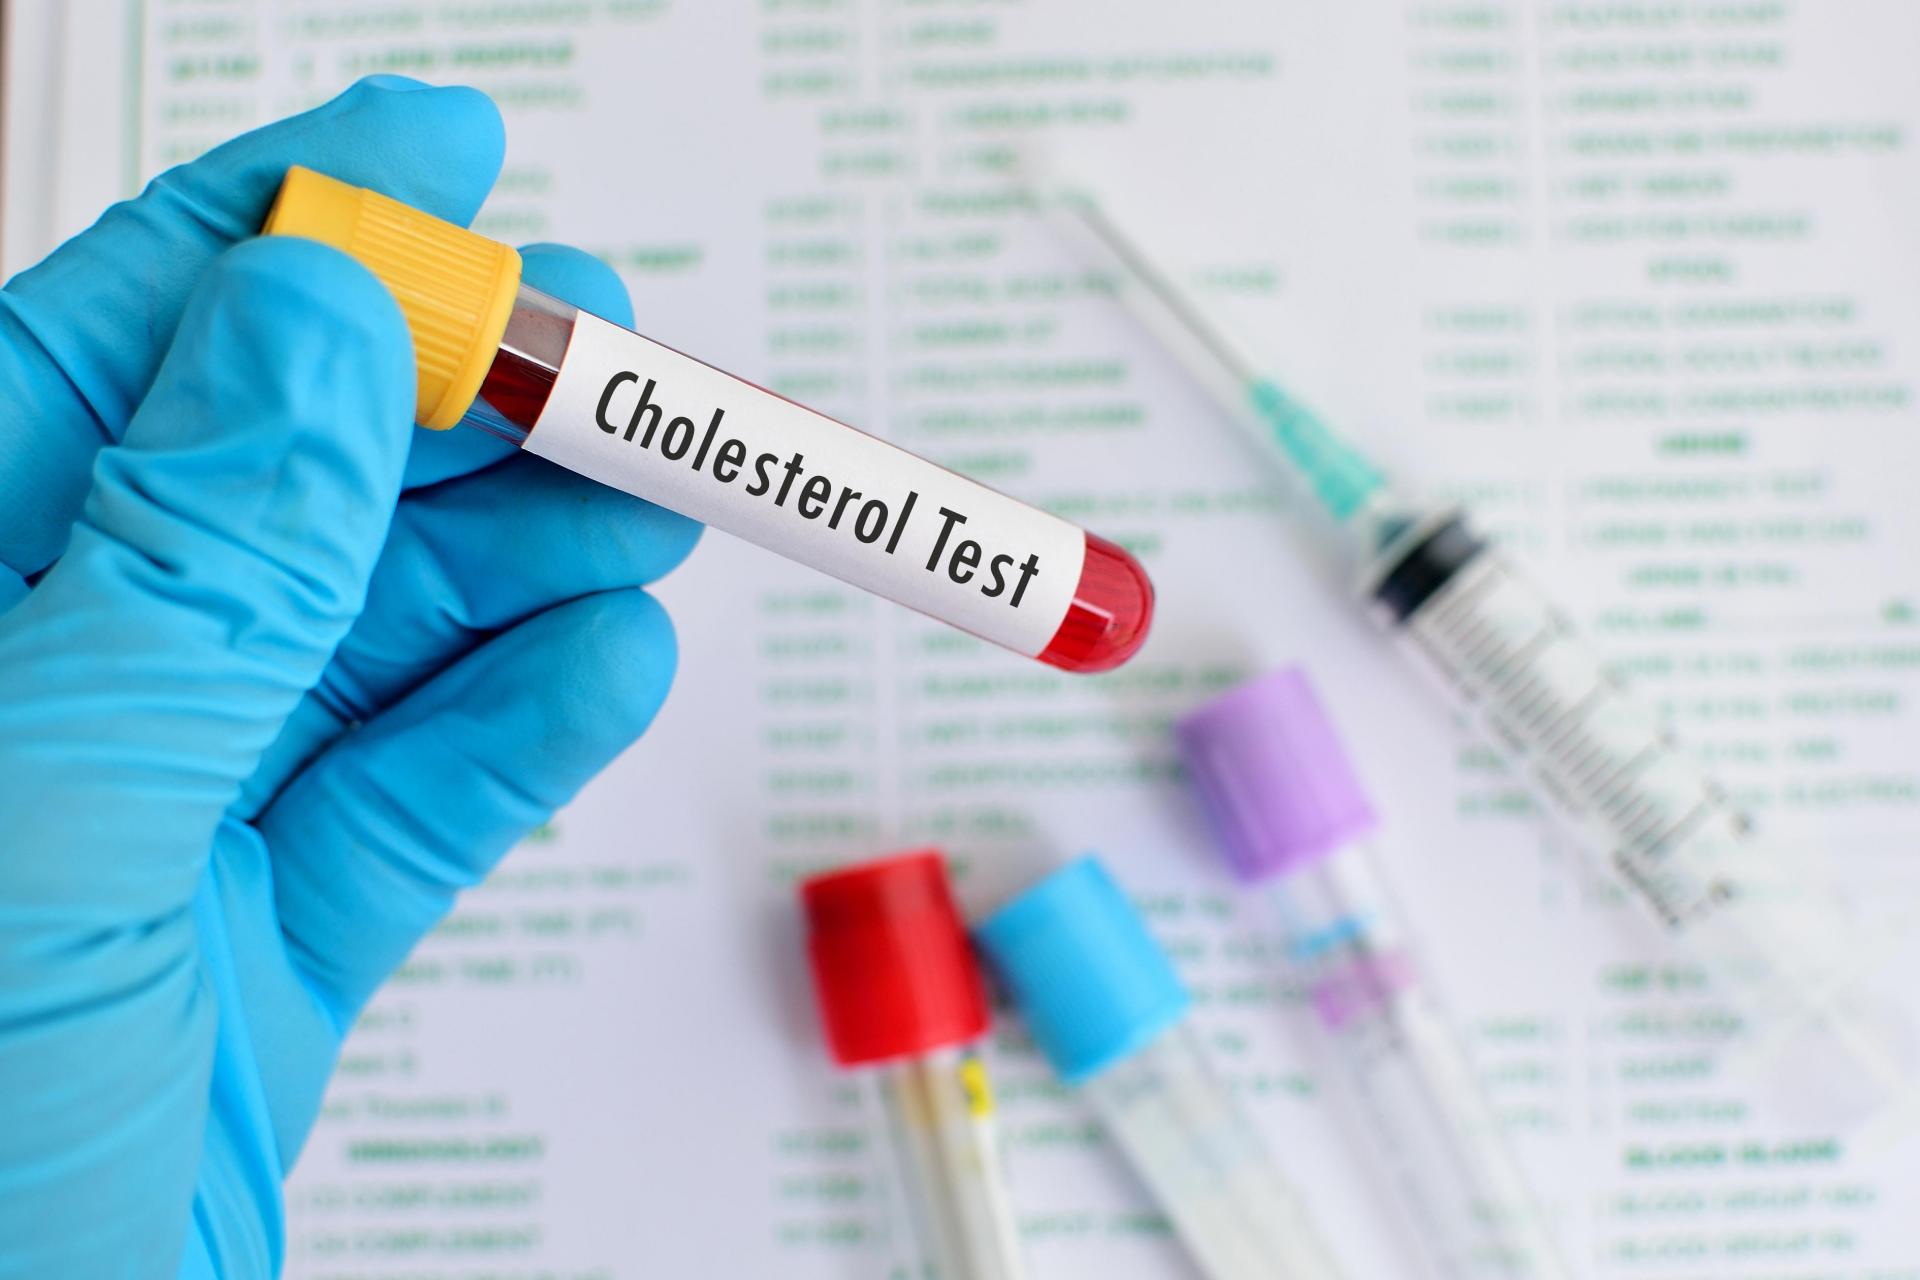 توصيات اختبارات مستوى الكوليسترول يجب تغييرها